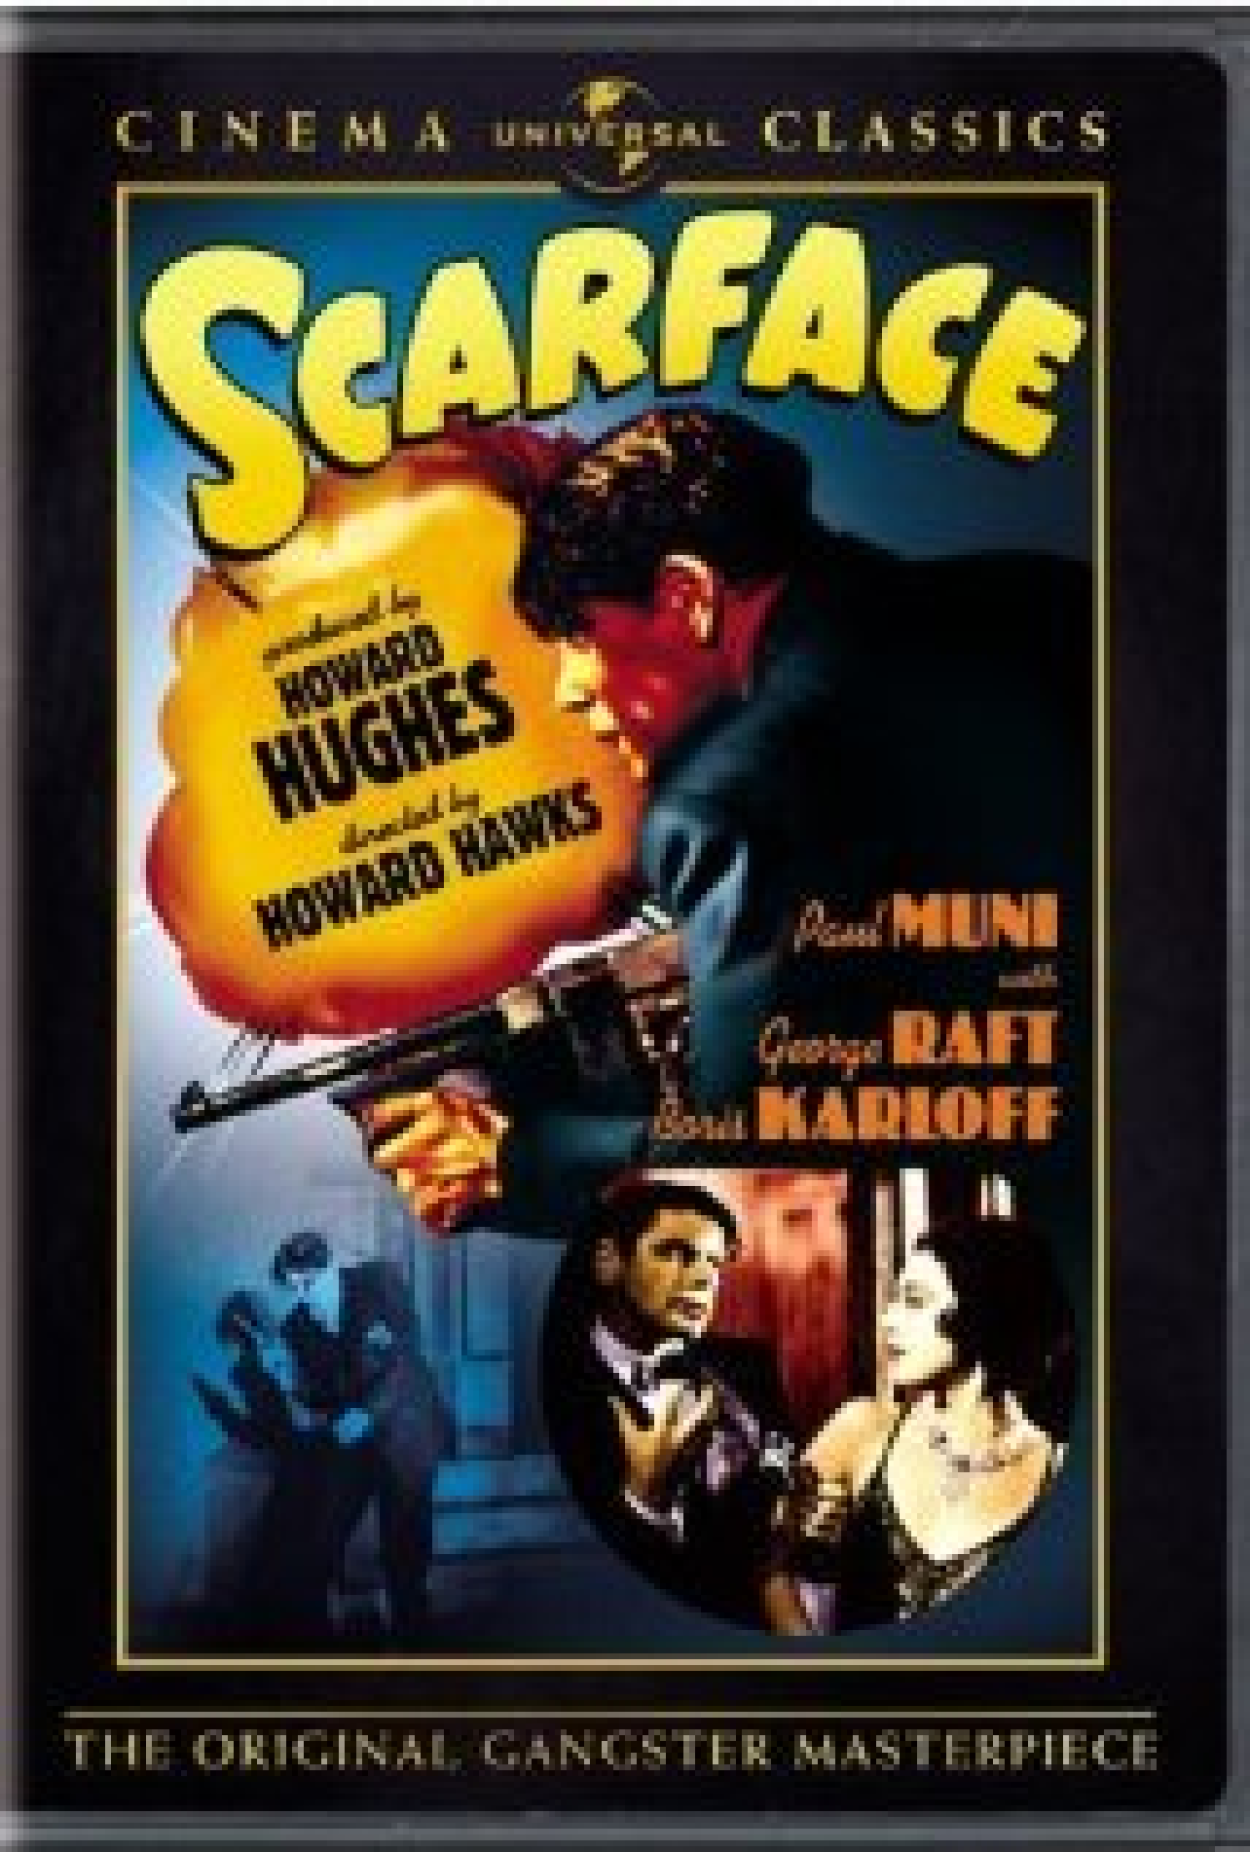 O que vocês acham de Scarface?Vale a pena assistir? : r/filmes